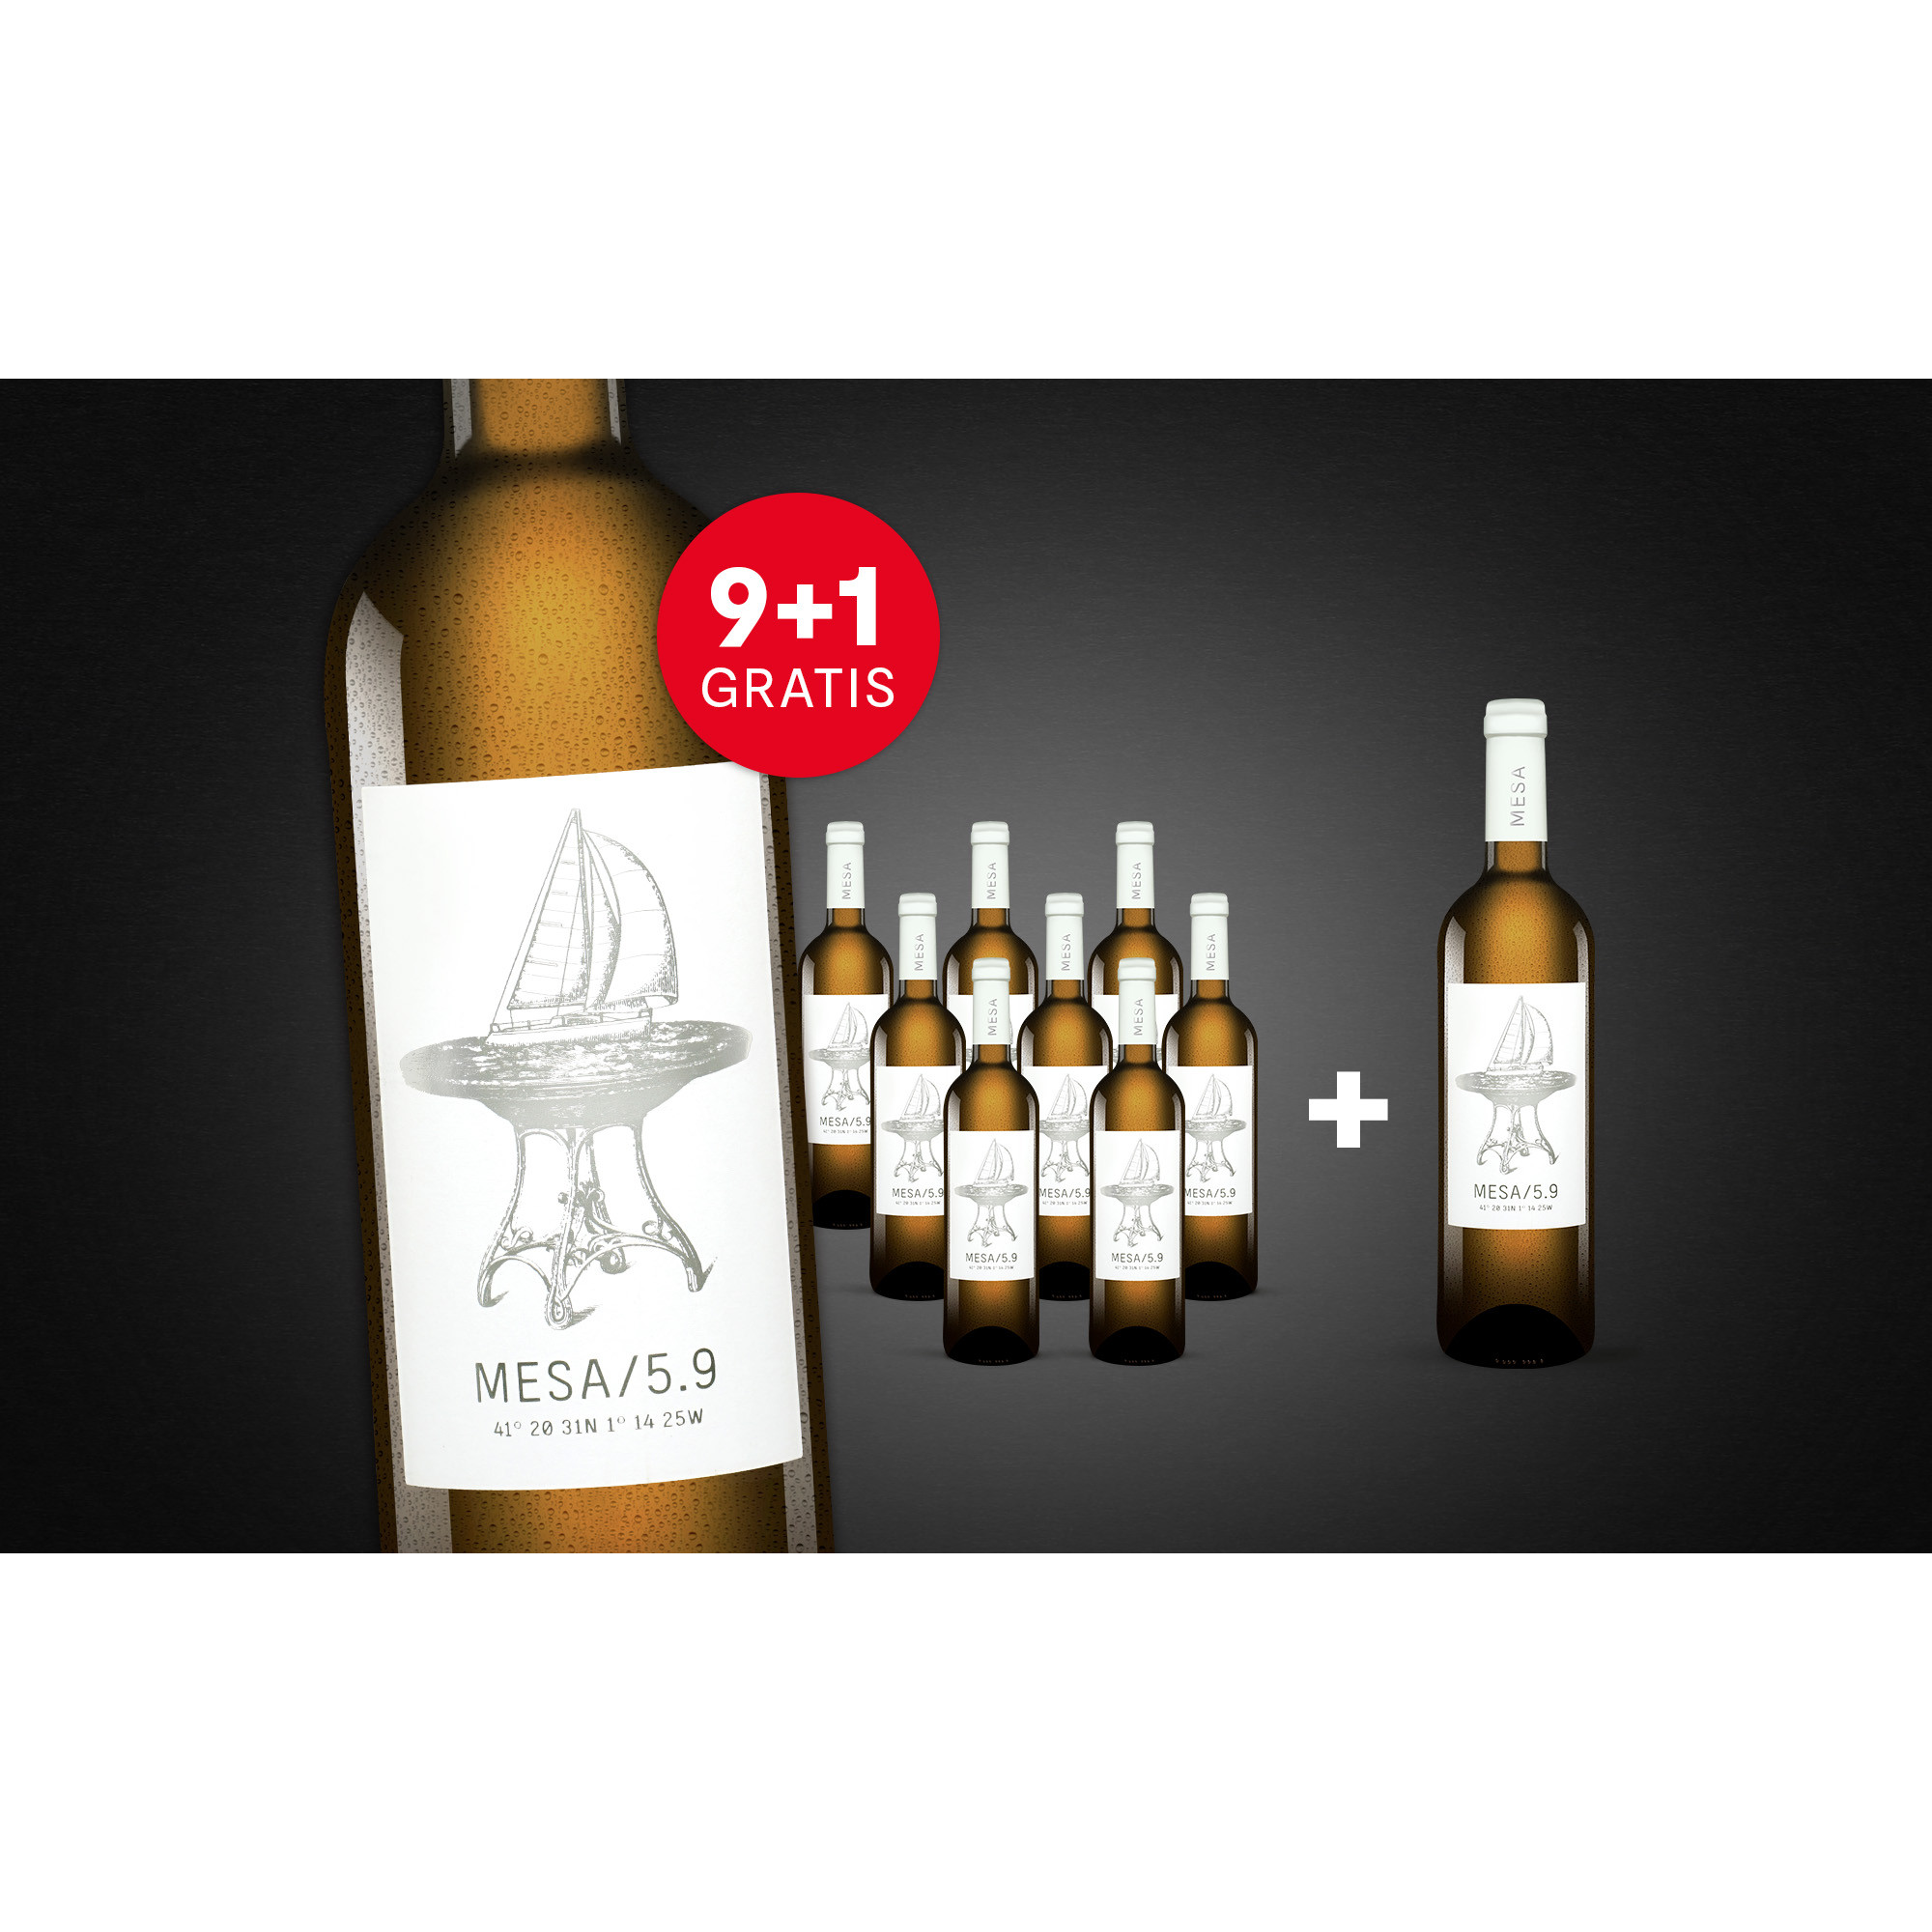 MESA/5.9 Blanco mit 1 Flasche GRATIS  7.5L Trocken Weinpaket aus Spanien 34793 vinos DE